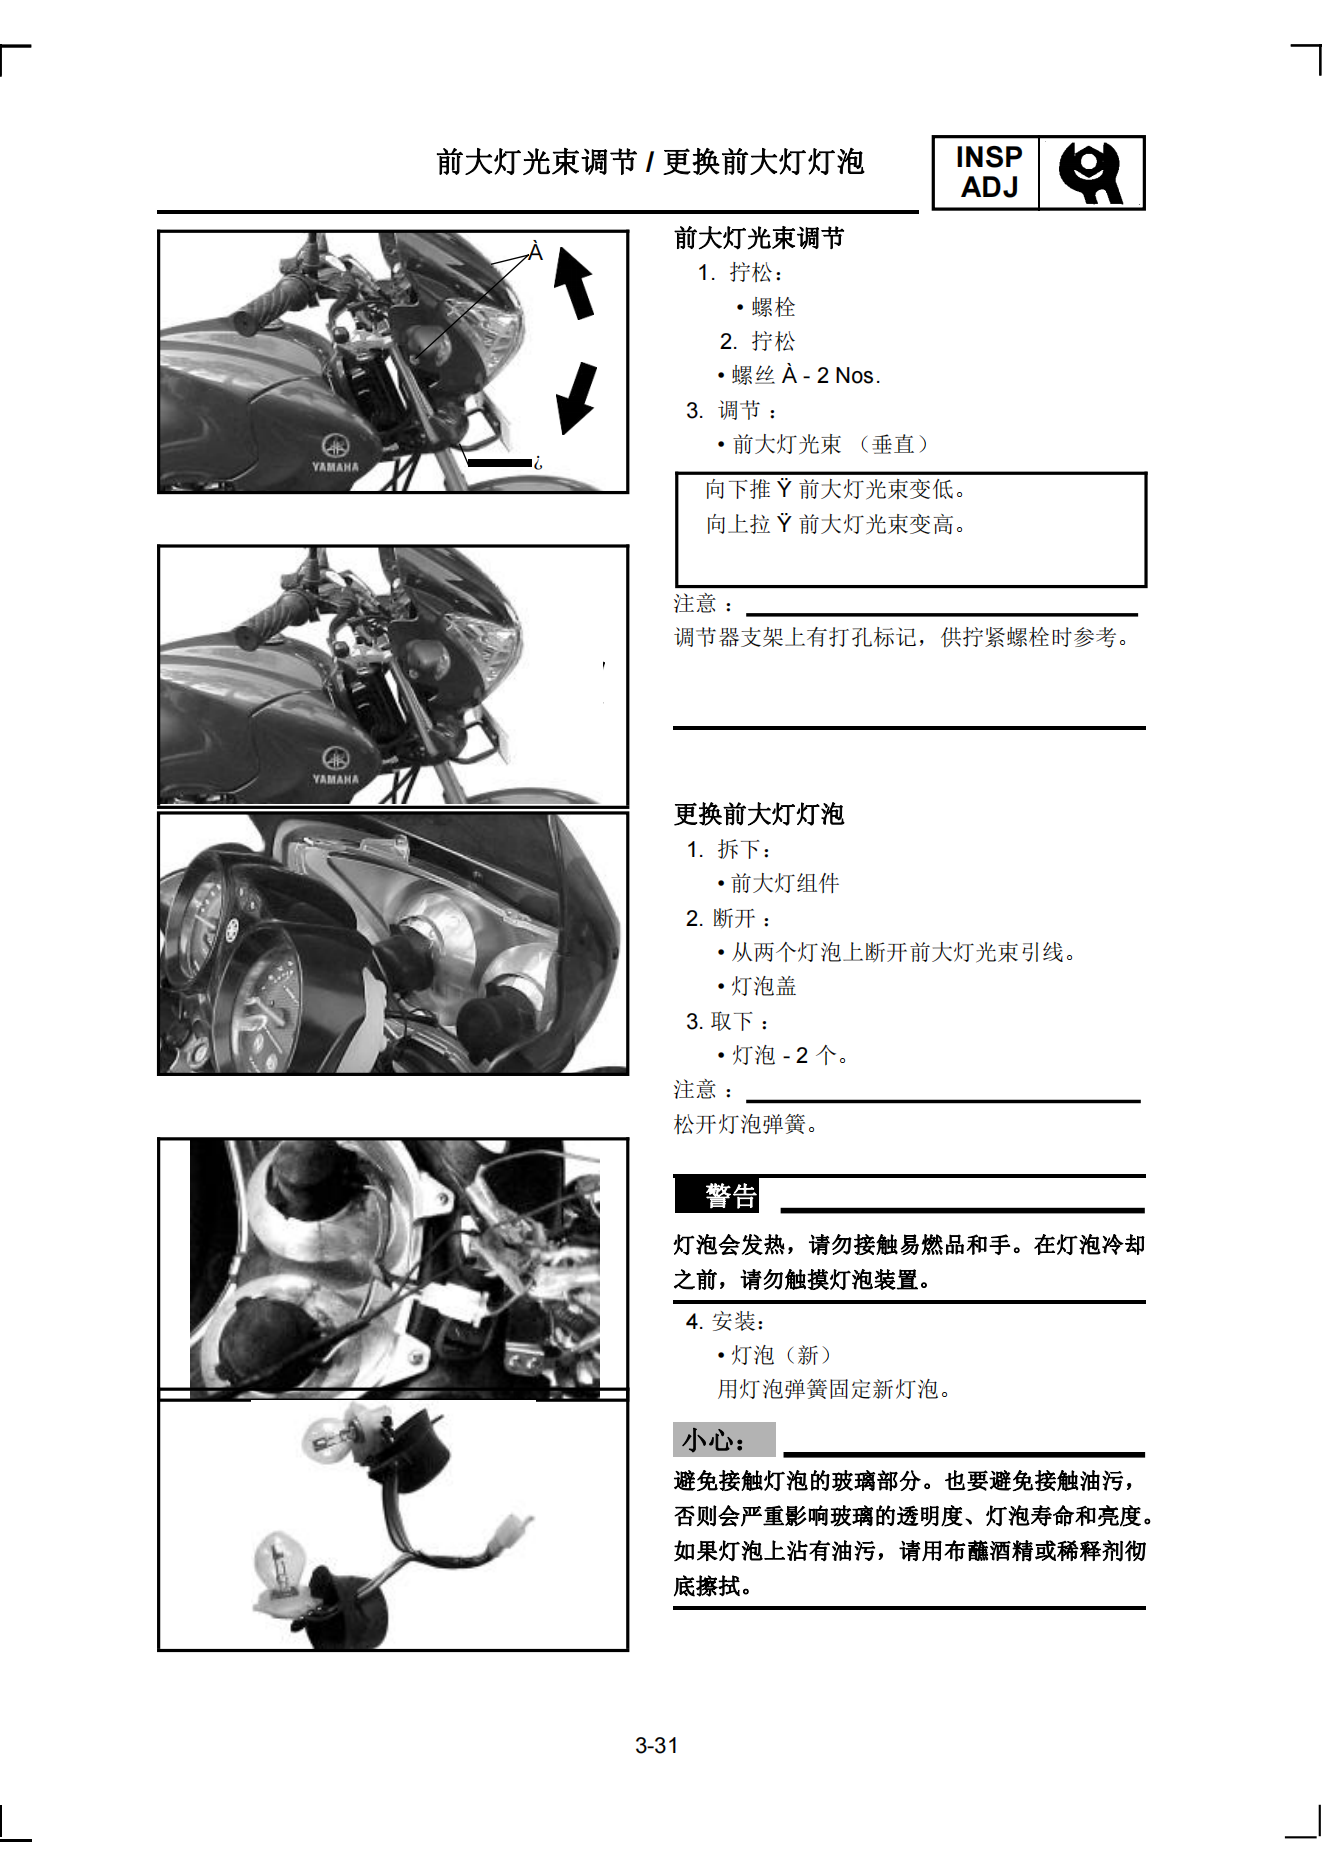 简体中文雅马哈ybr125维修手册插图3